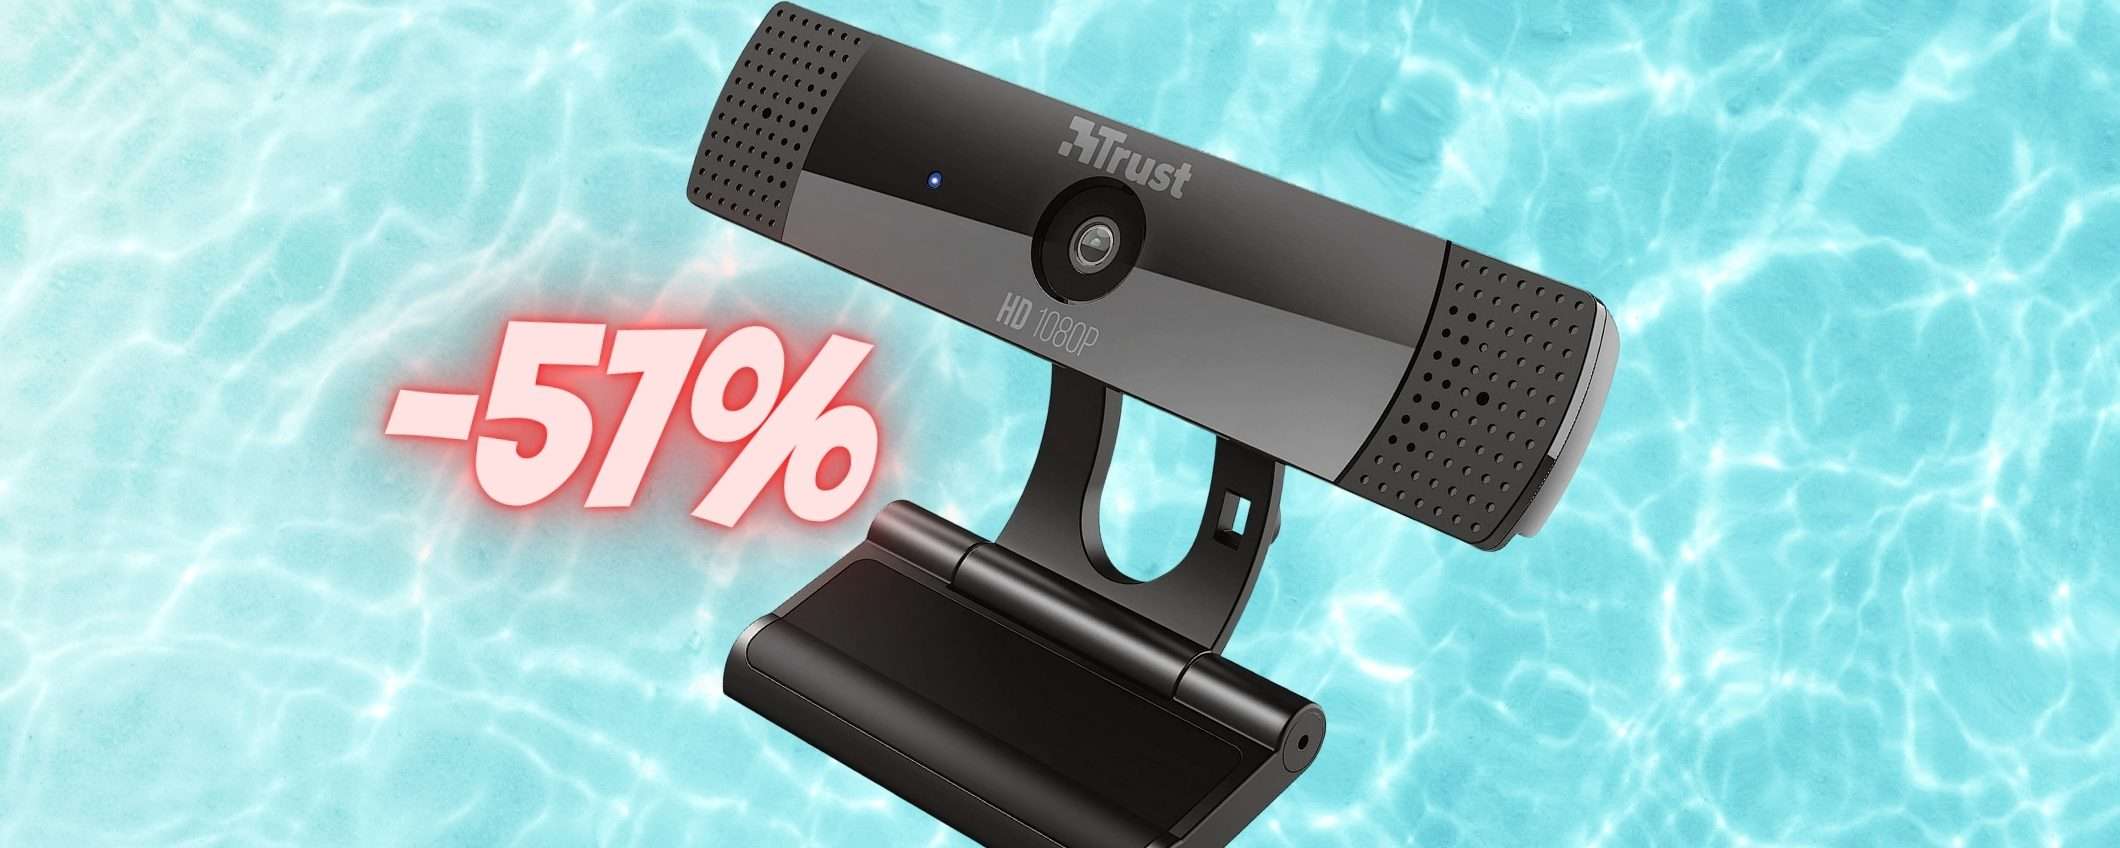 Webcam Full HD e vieni una favola: Trust GTX prezzo SHOCK